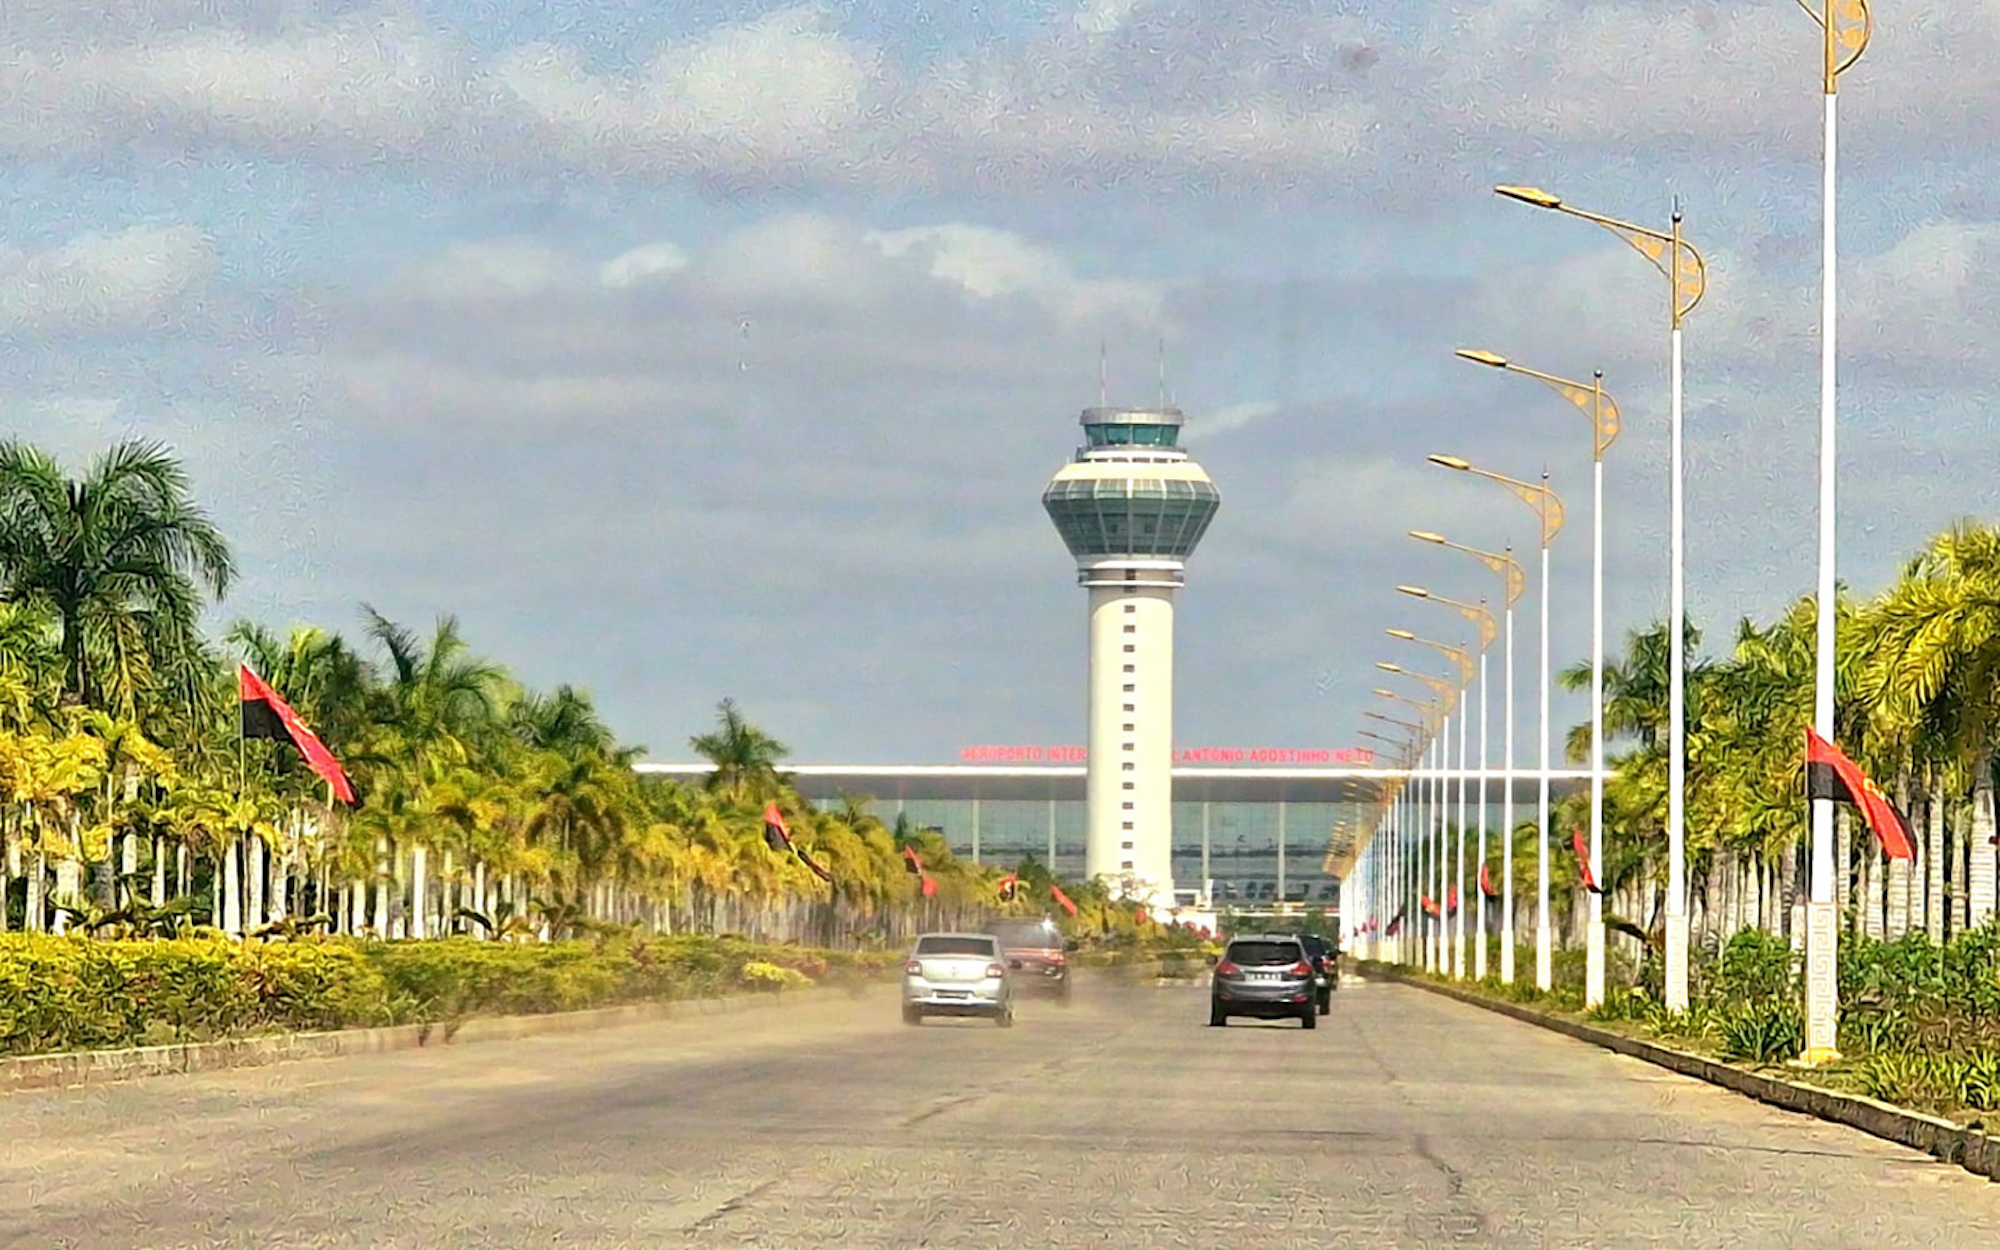 New international airport in Luanda